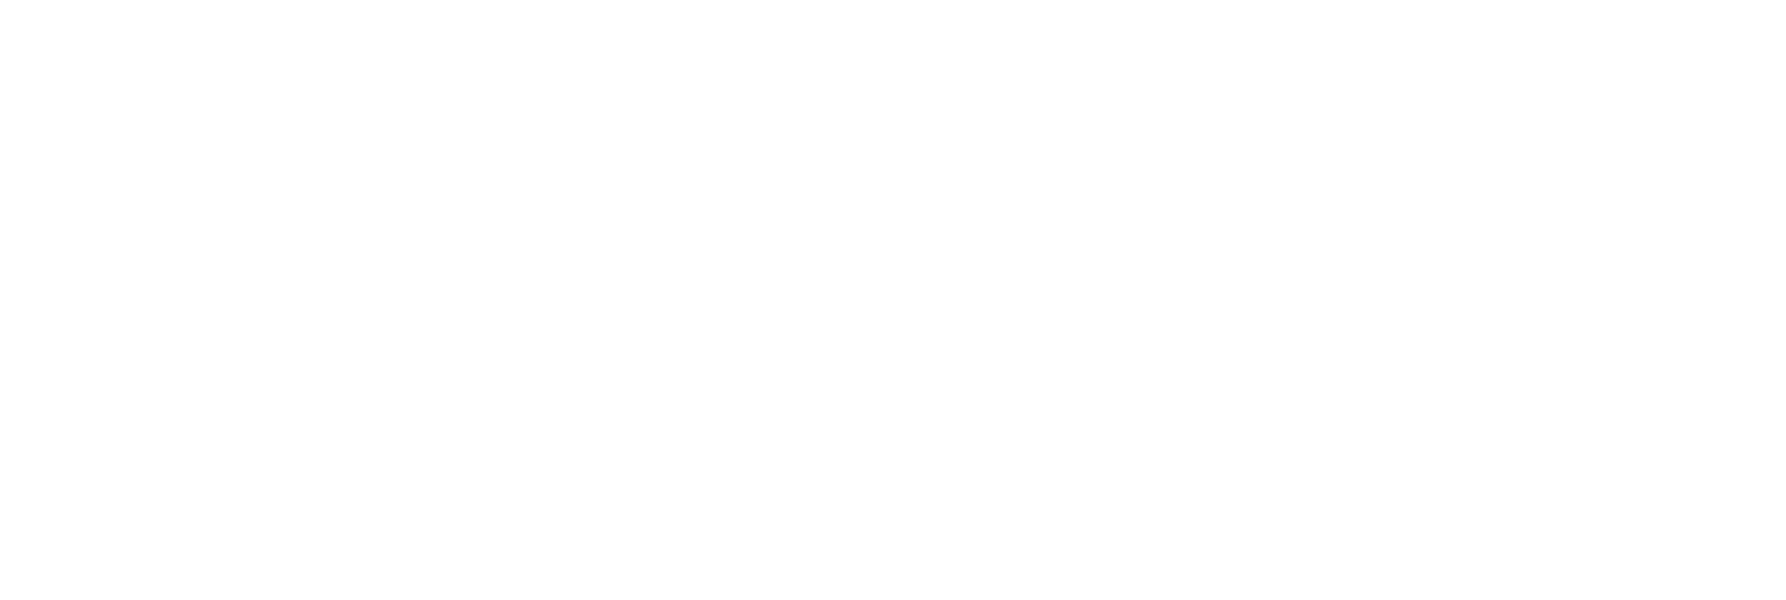 Facultad de Ingeniería – Universidad Finis Terrae Logo